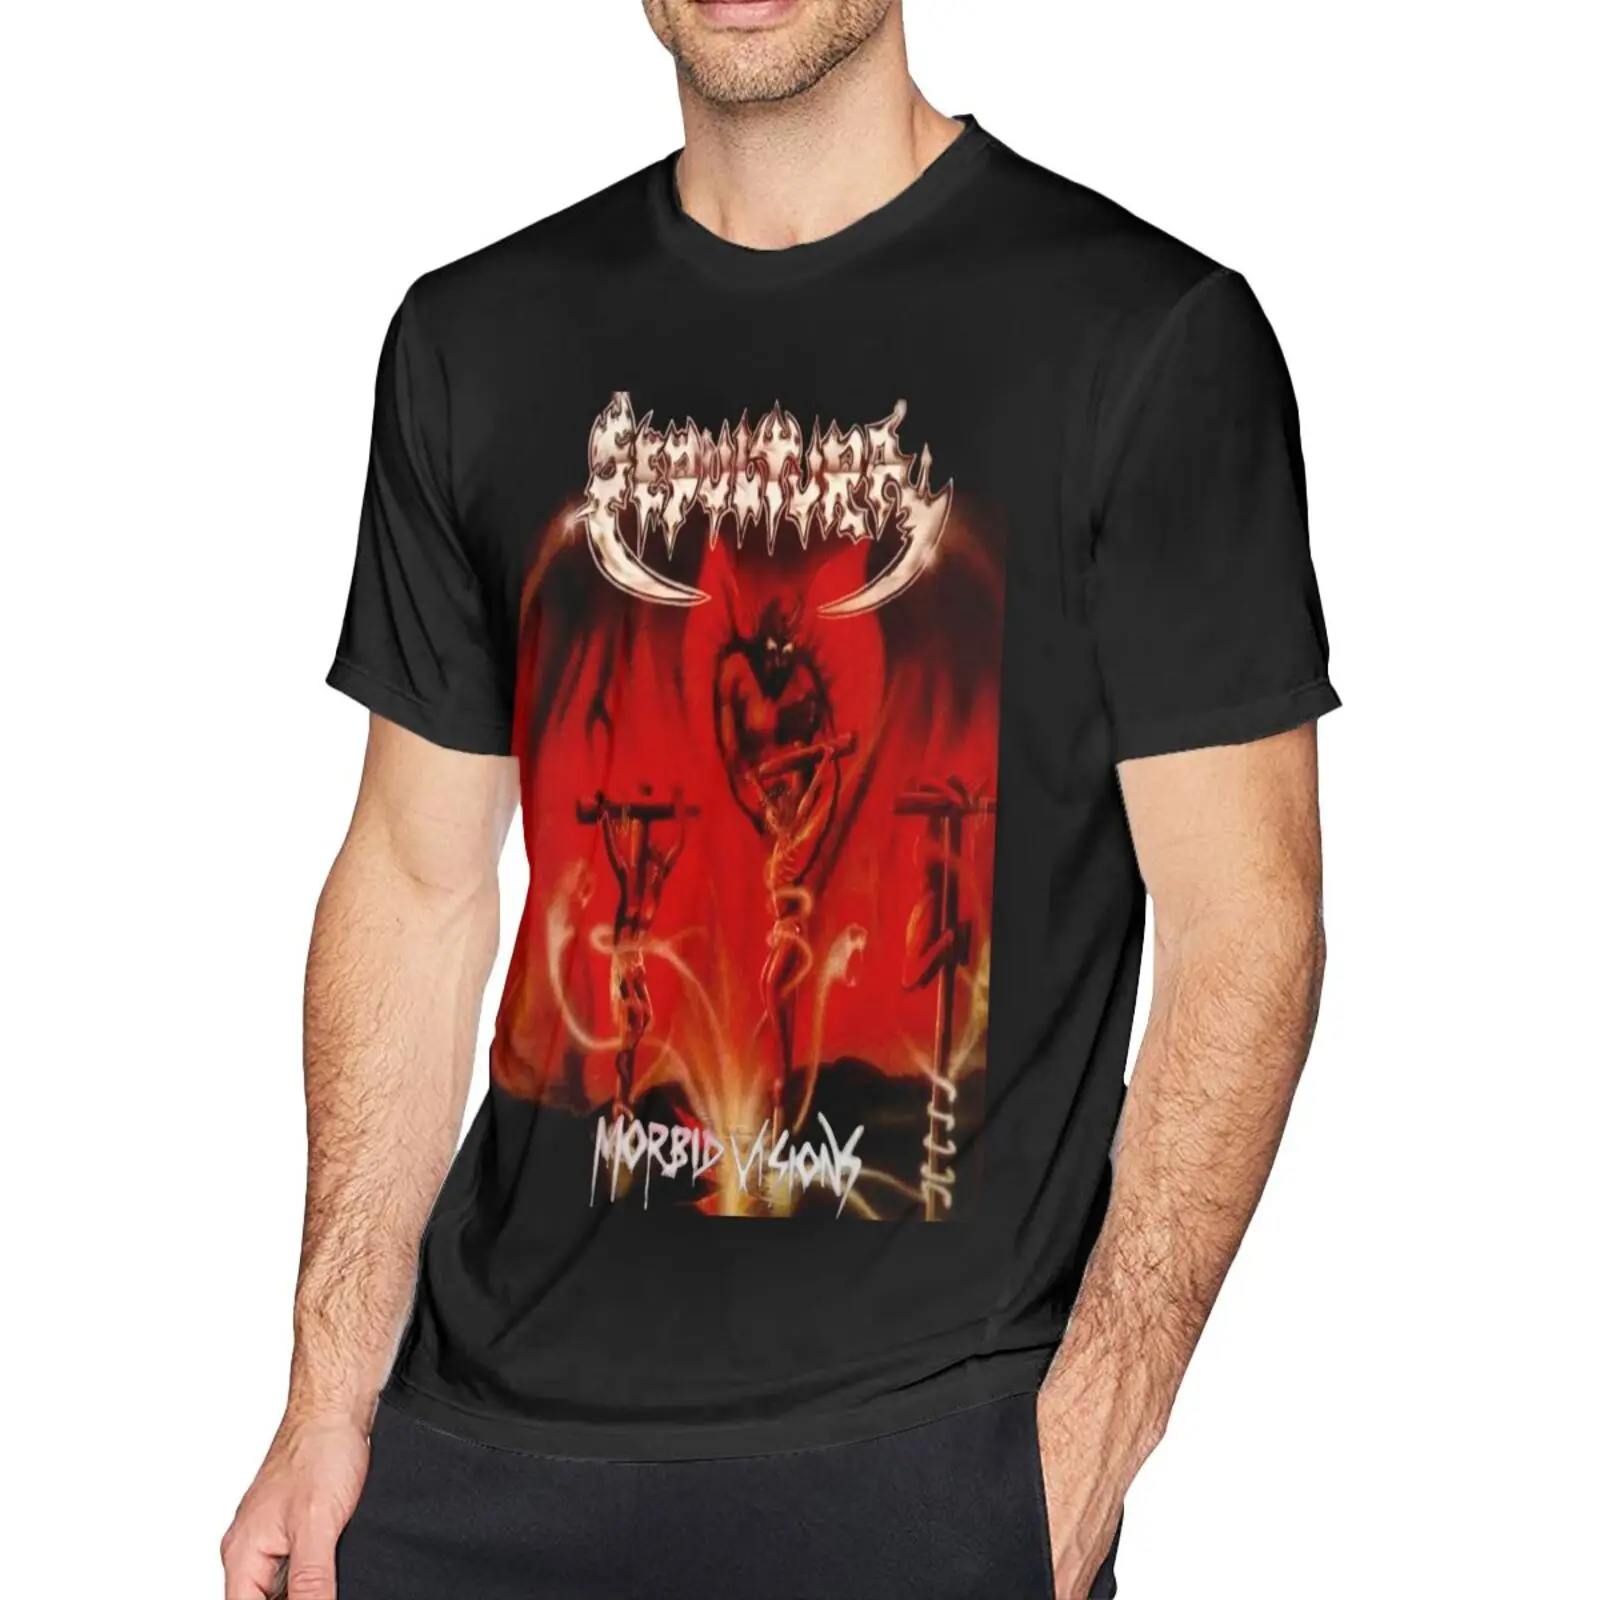 

Мужская футболка Sepultura Morbid Visions sarкофago, женские футболки для мужчин, аниме блузка, мужские футболки